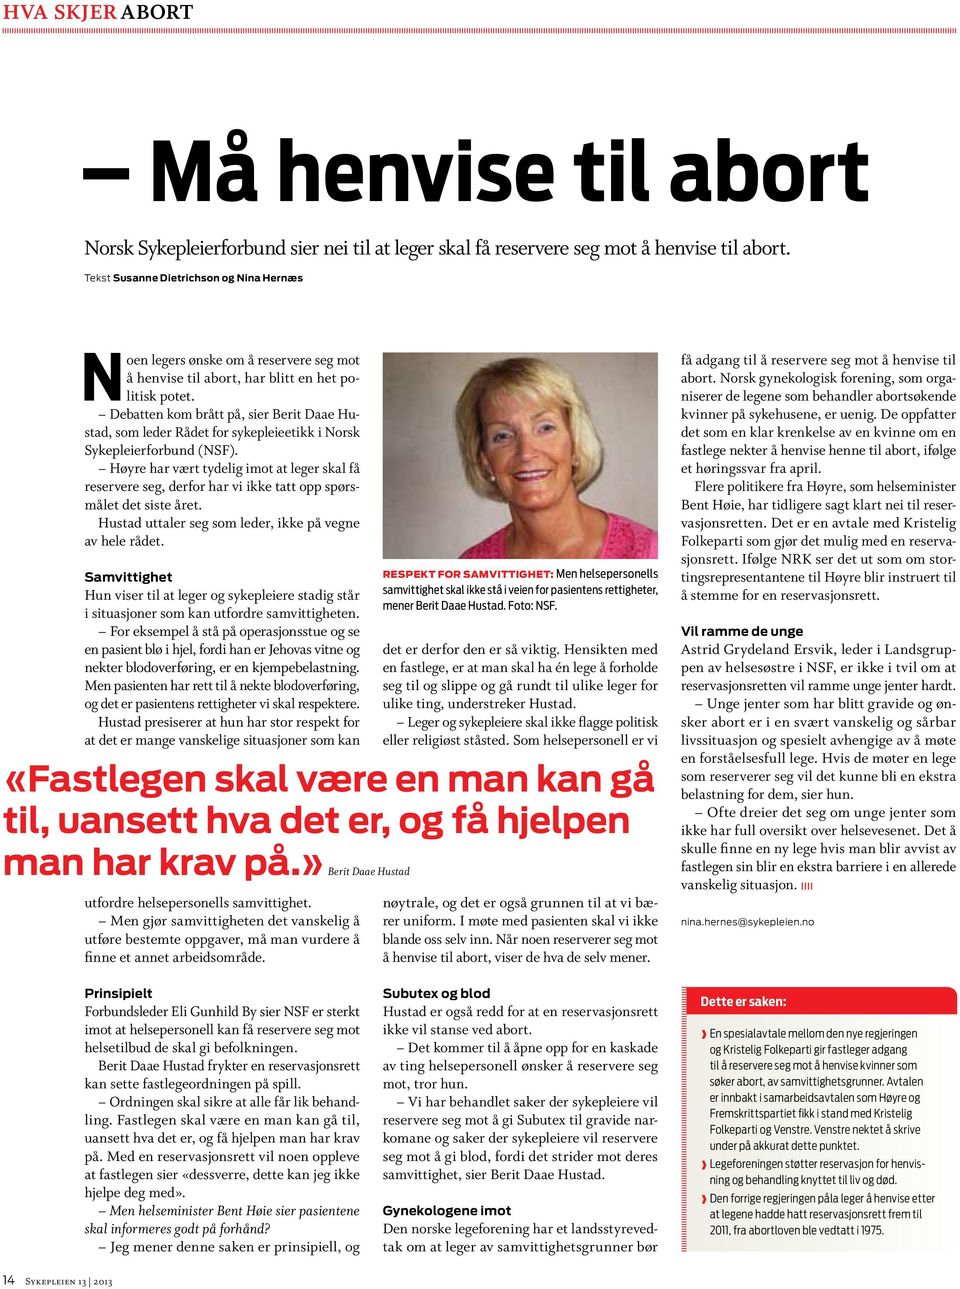 Debatten kom brått på, sier Berit Daae Hustad, som leder Rådet for sykepleieetikk i Norsk Sykepleierforbund (NSF).